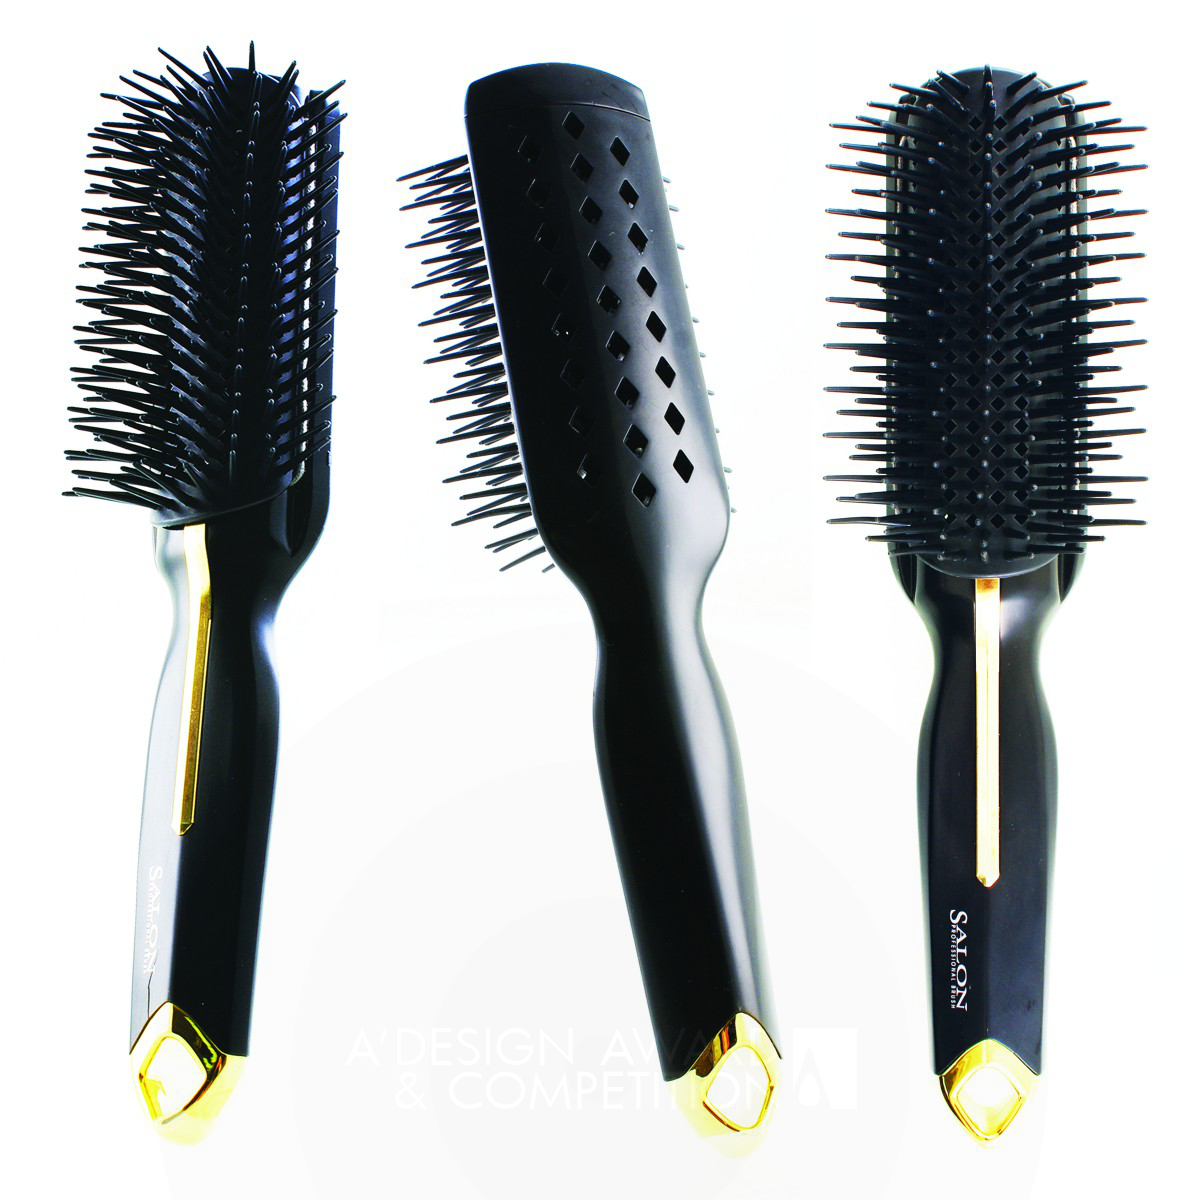 A Plus Brush  Multifunctonal Hairbrush by Dennis Fang